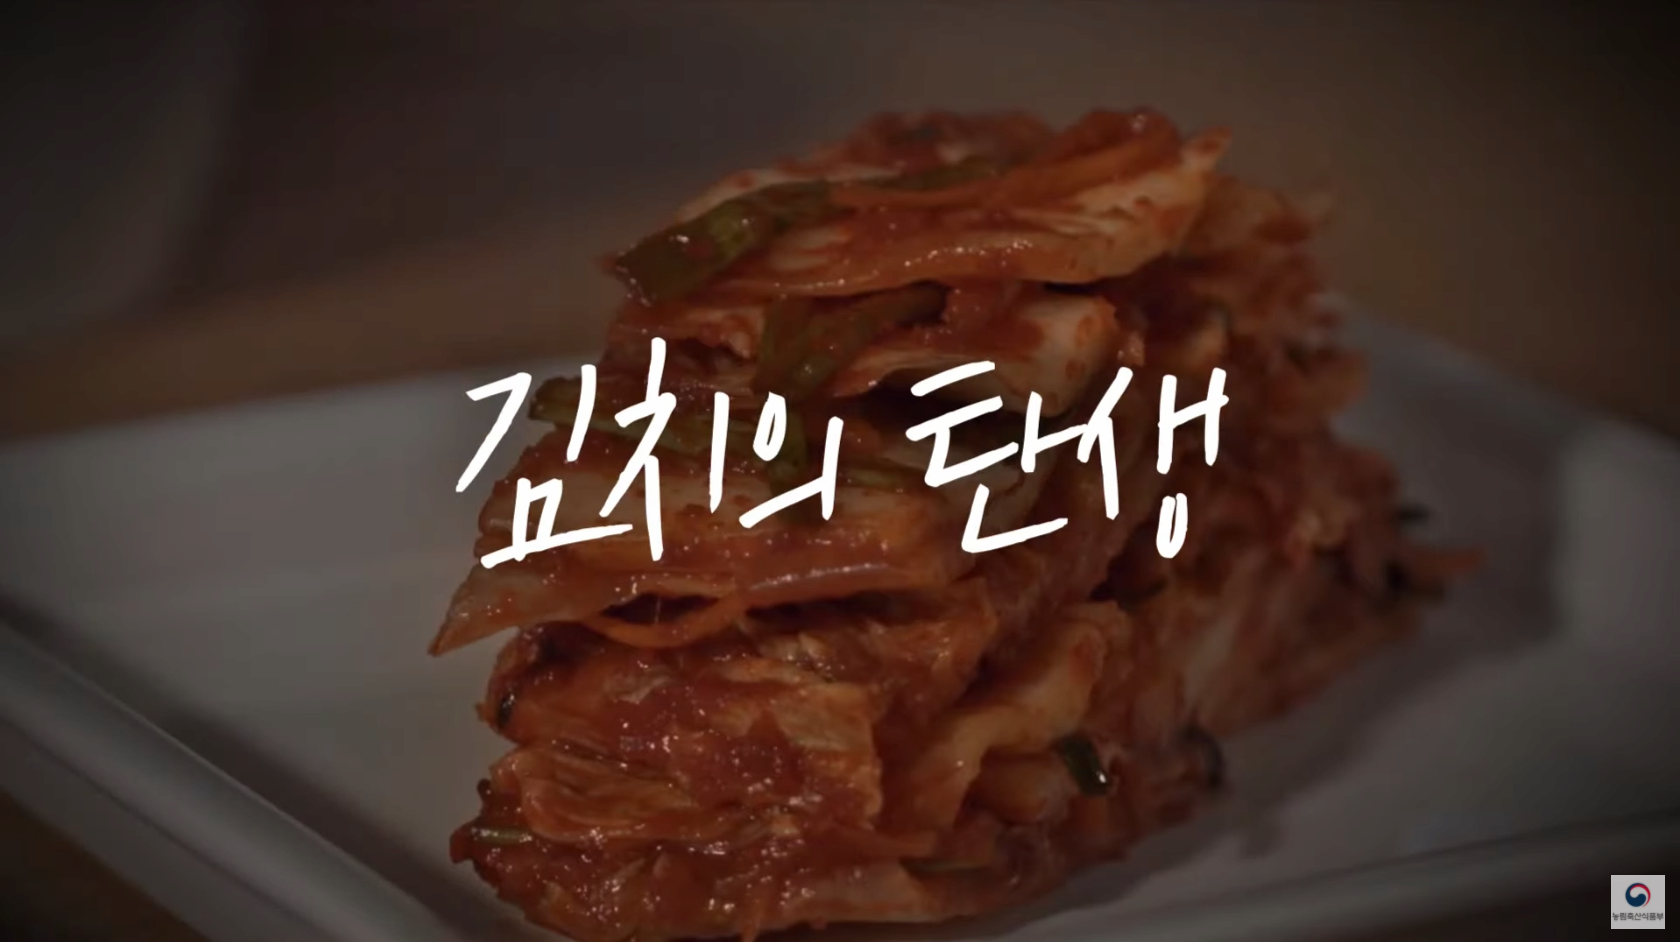 김치는 한국 전통음식입니다. 김치의 탄생 | K푸드의 진화 ep.1 본문 내용 참조